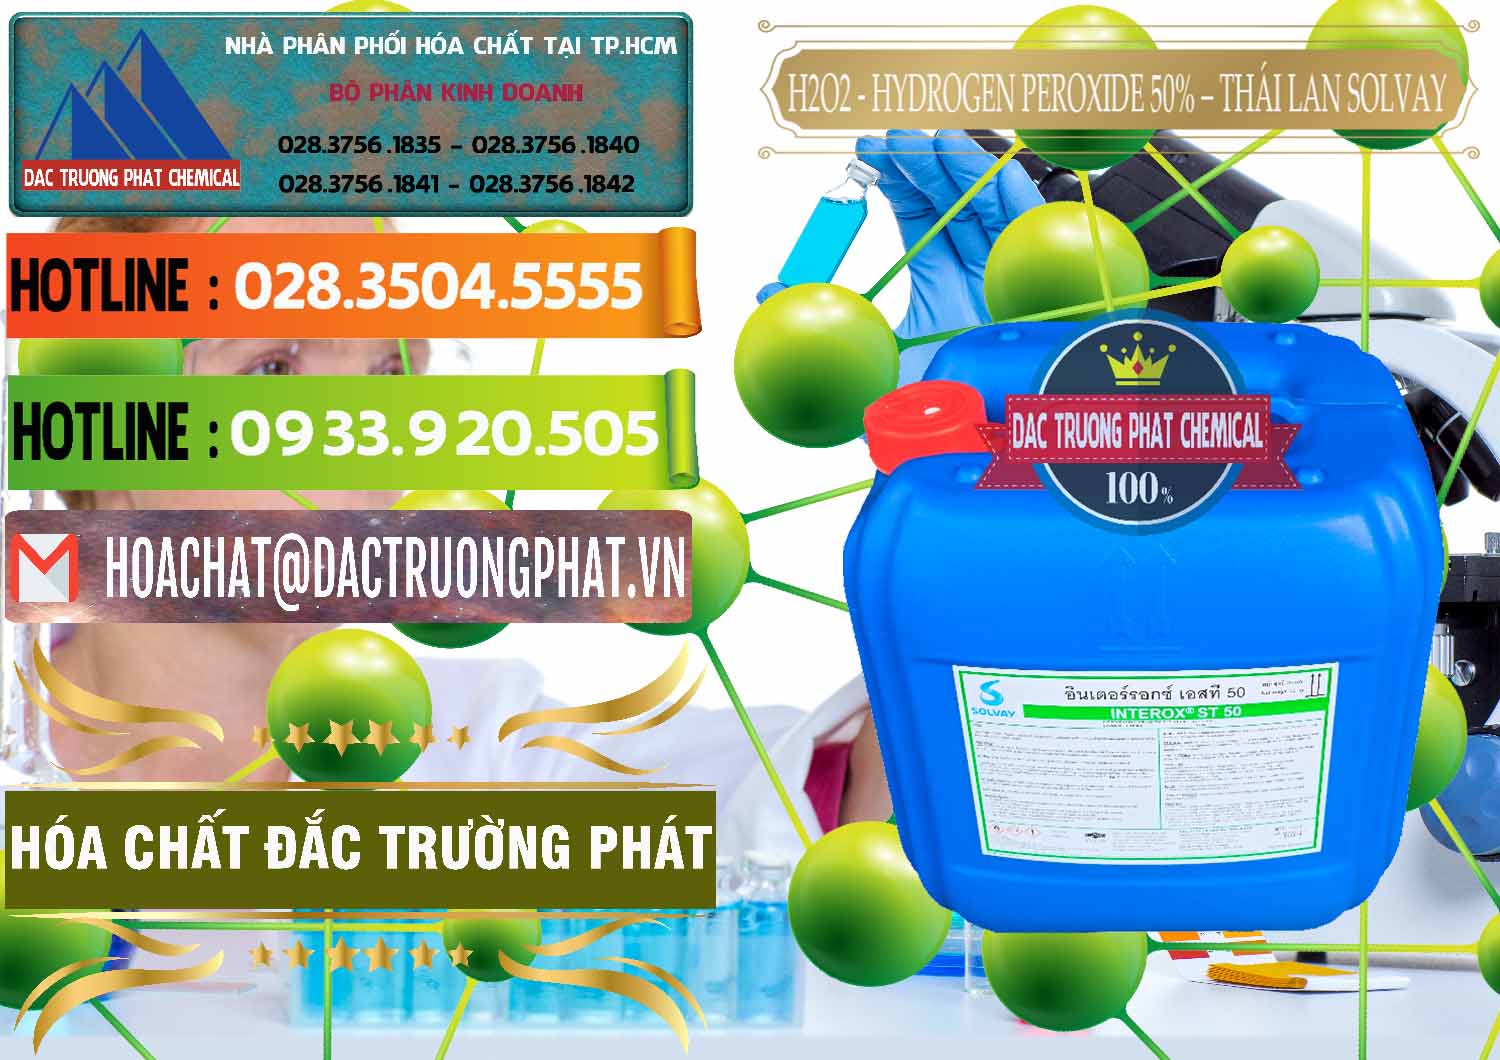 Công ty bán và cung cấp H2O2 - Hydrogen Peroxide 50% Thái Lan Solvay - 0068 - Cung cấp & nhập khẩu hóa chất tại TP.HCM - cungcaphoachat.com.vn